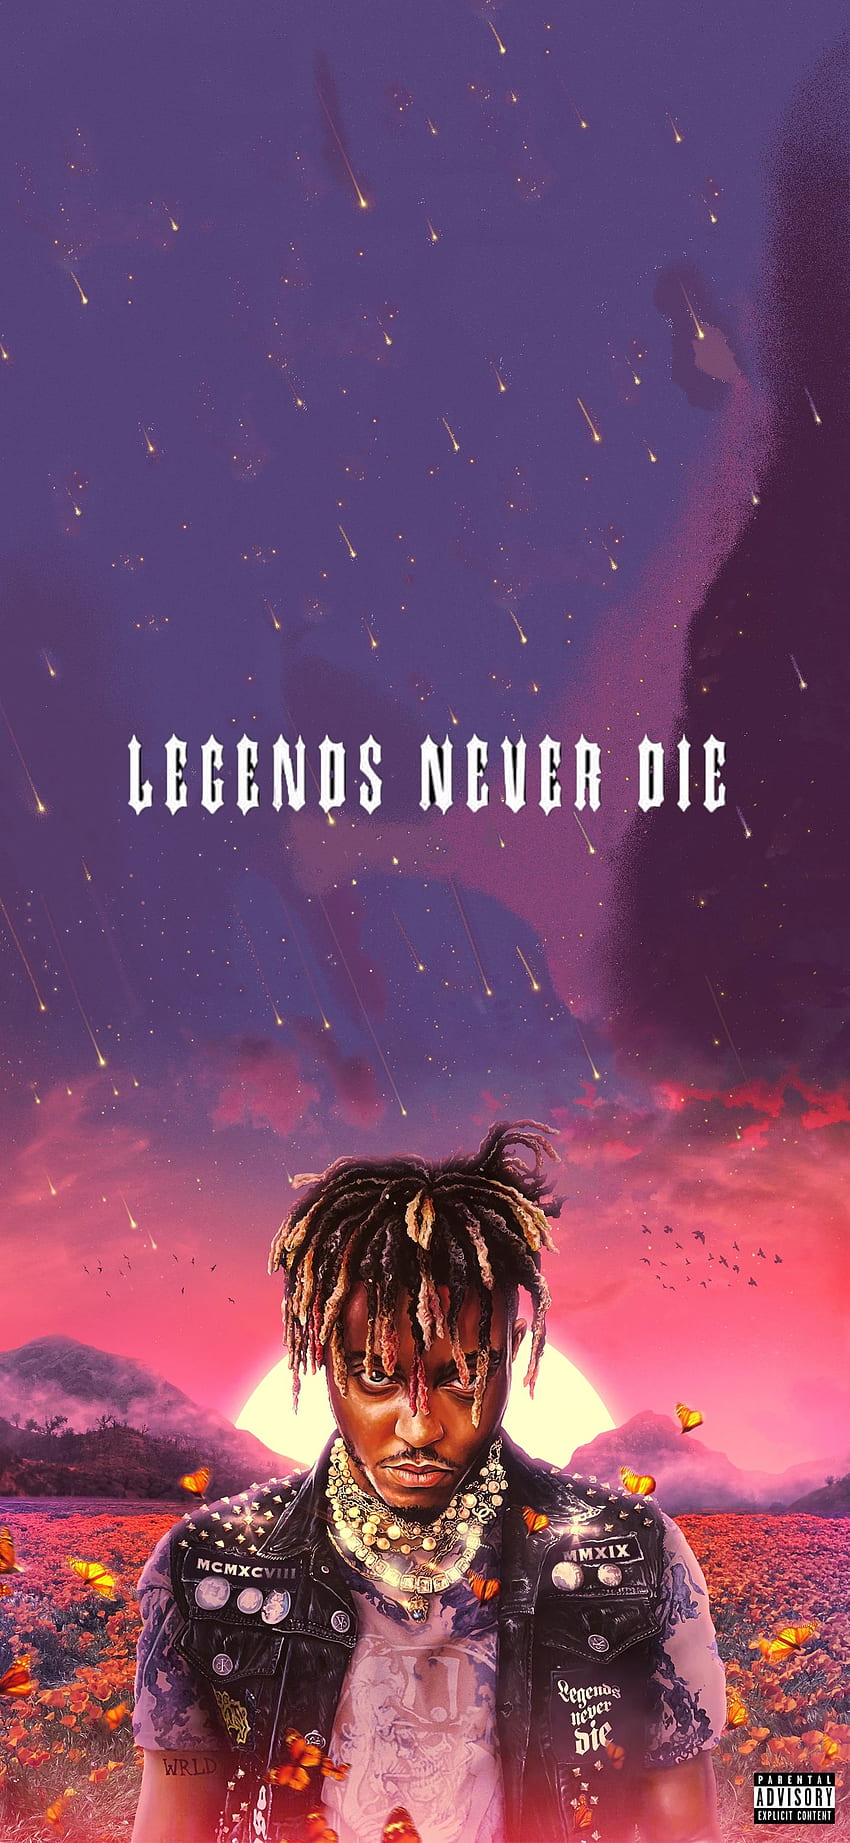 Juice WRLD - Legends Never Die (Deluxe) Wallpaper by me @luisitxo - juice  wrld post - Imgur